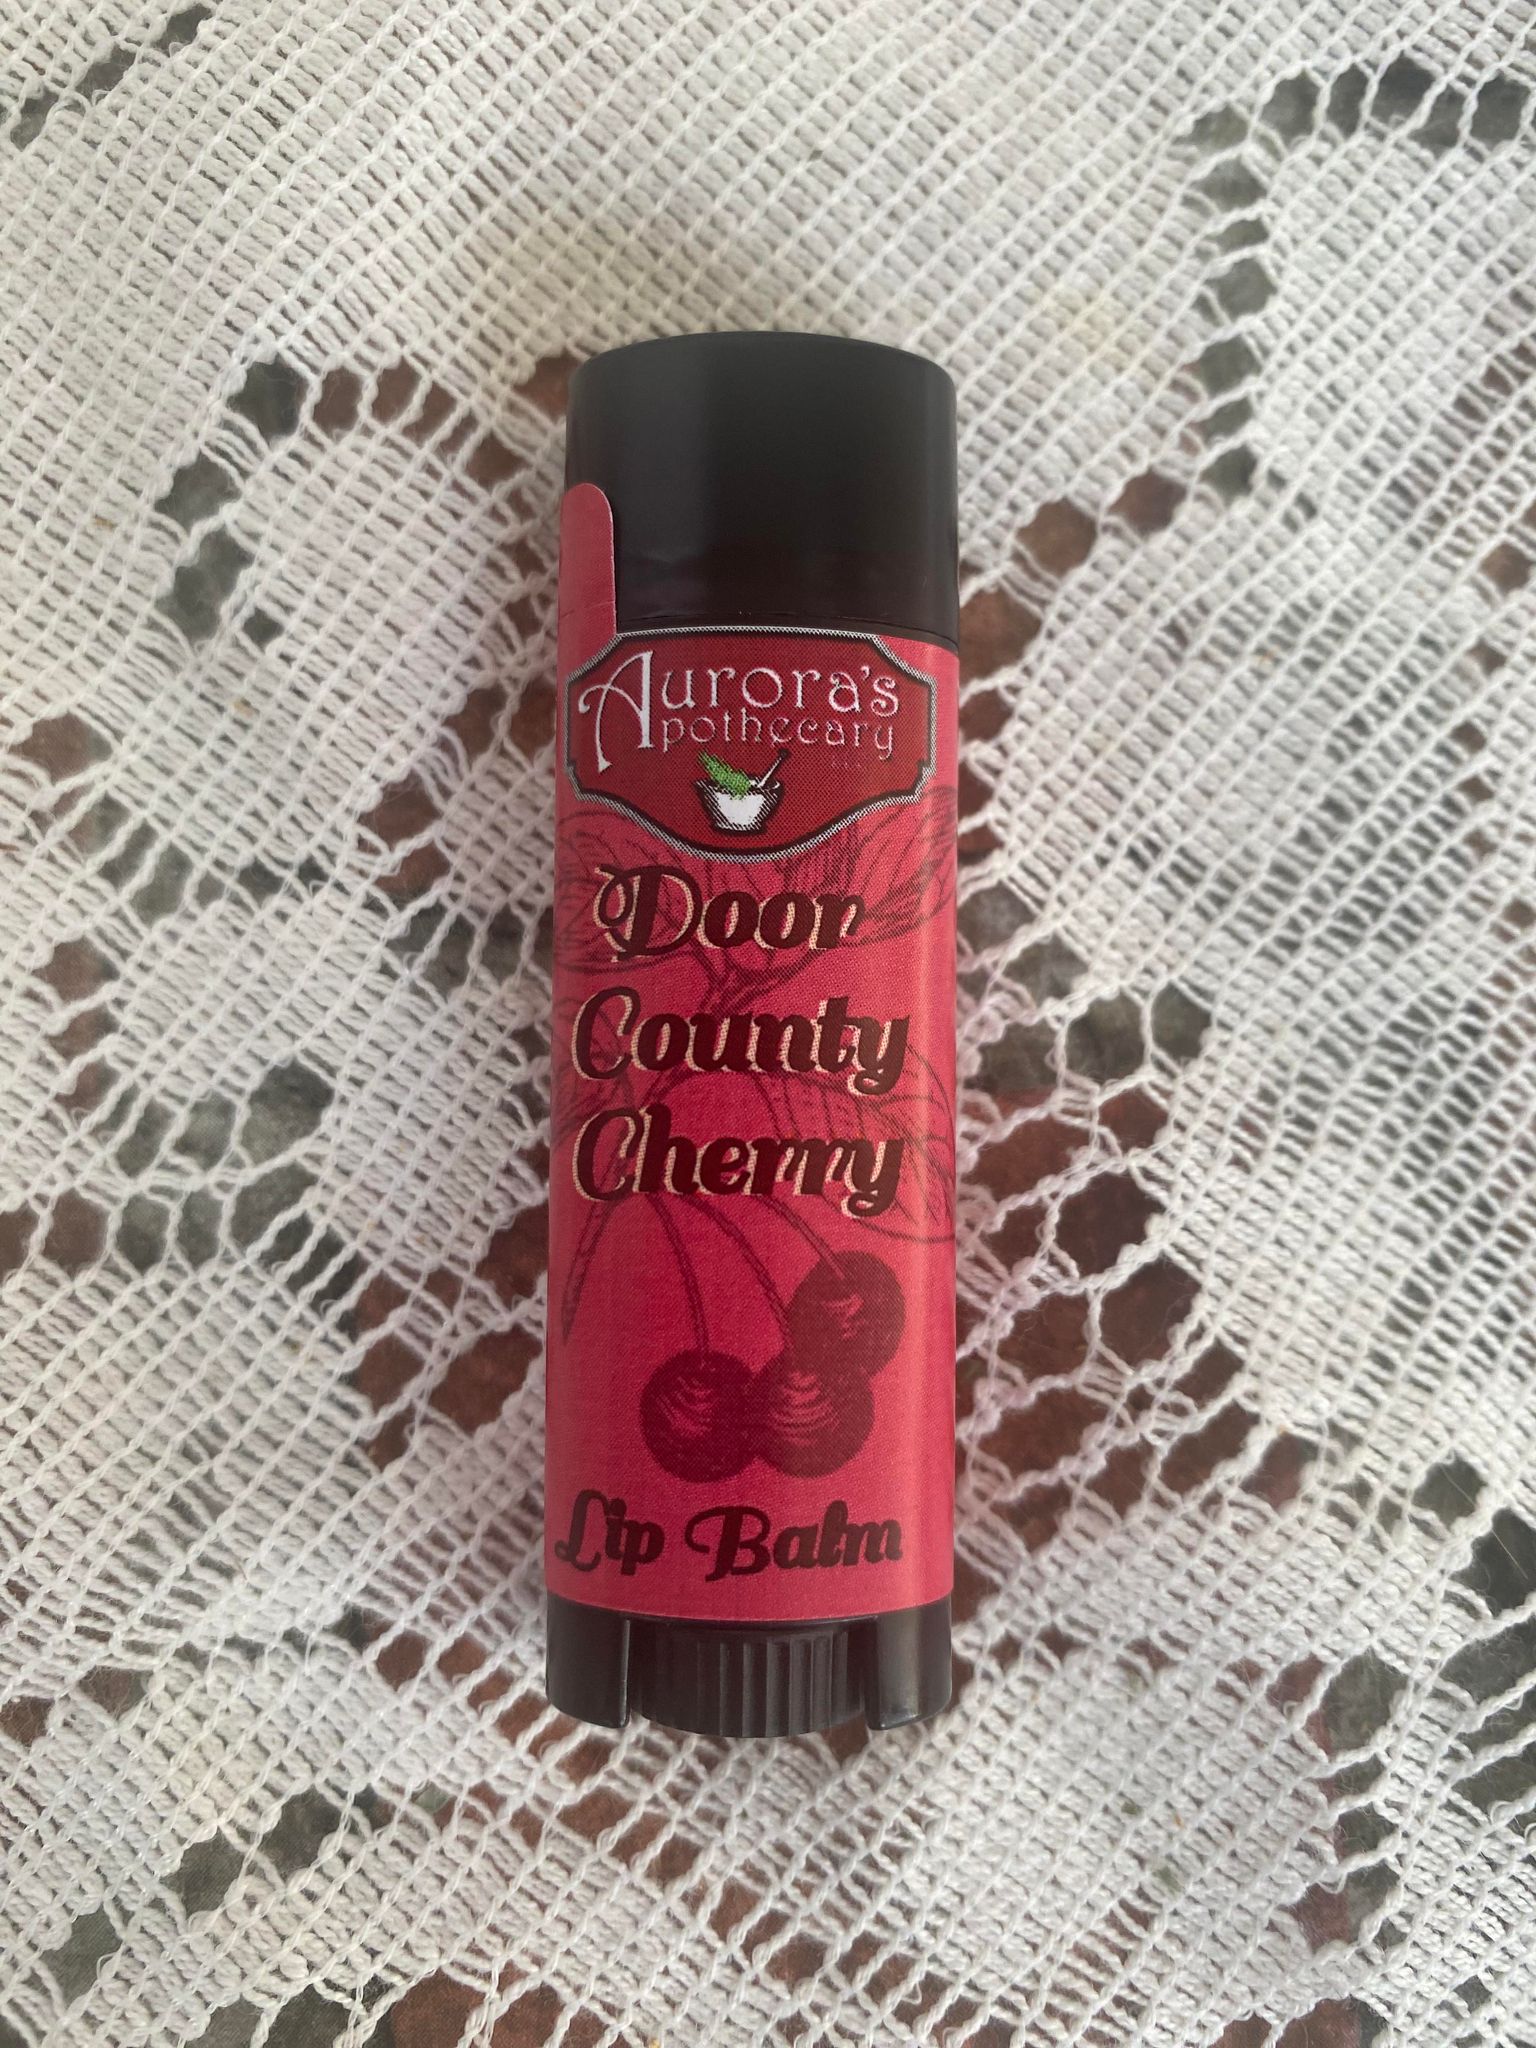 Door County Cherry Lip Balm